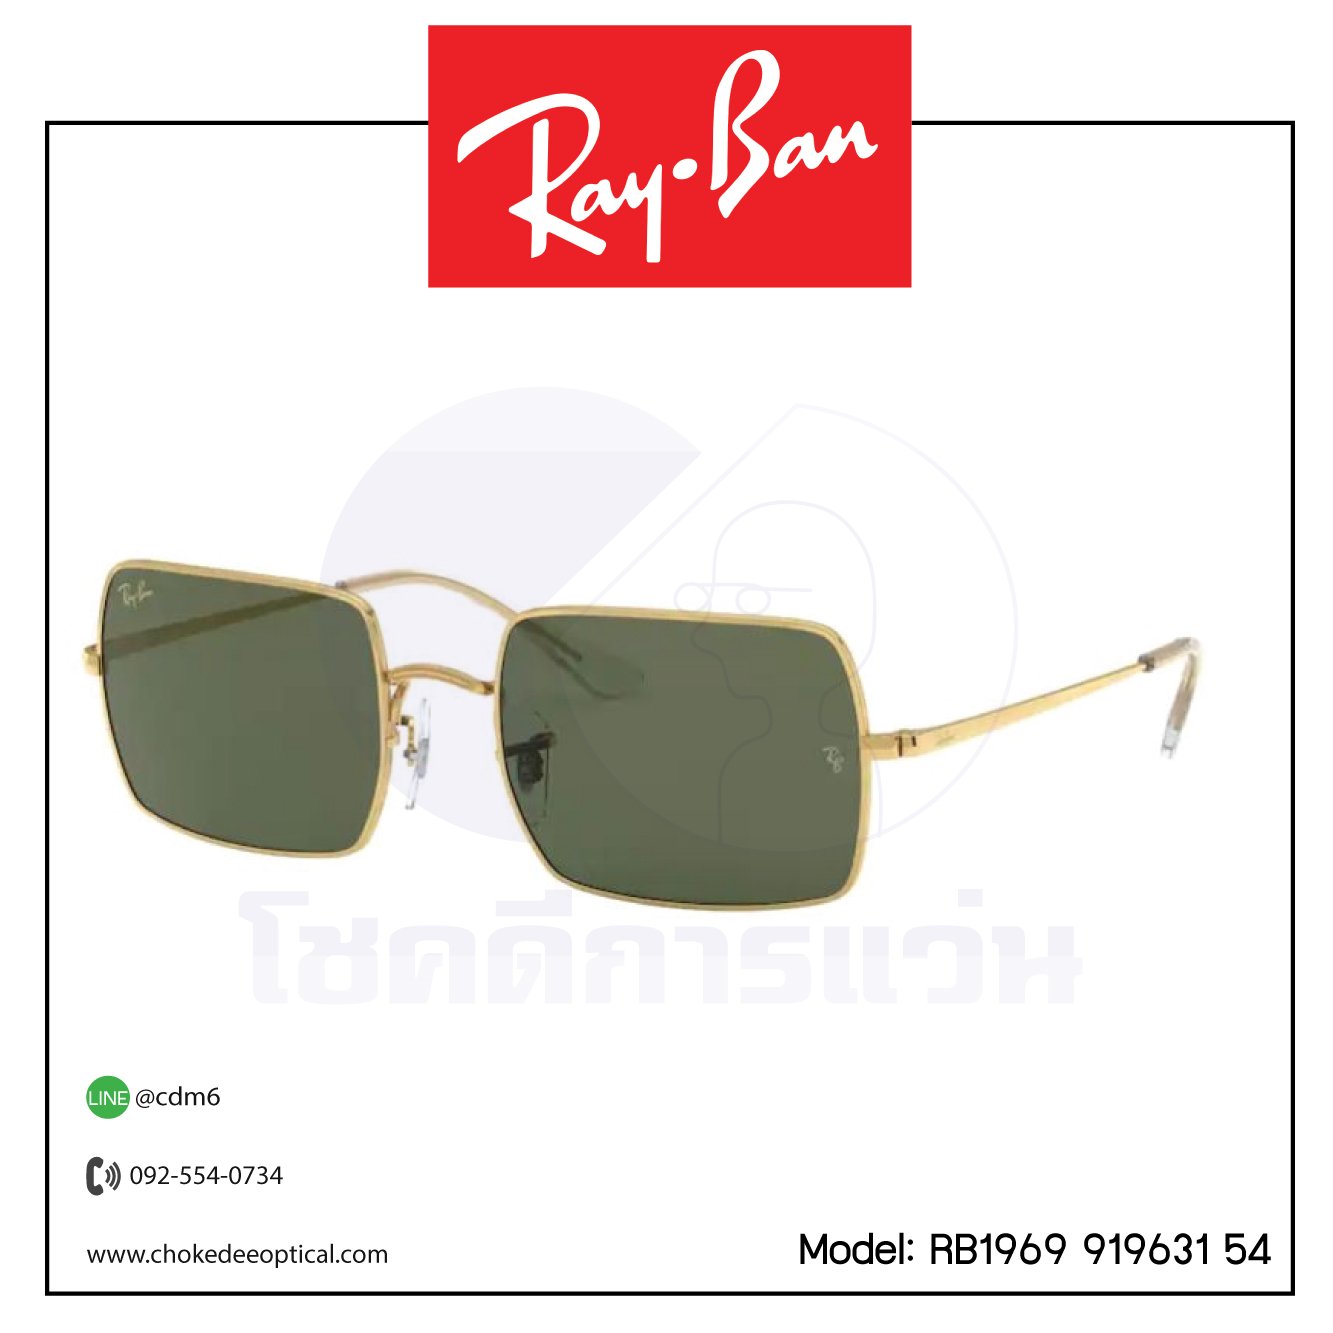 แว่นกันแดด Rayban RB1969 919631 54